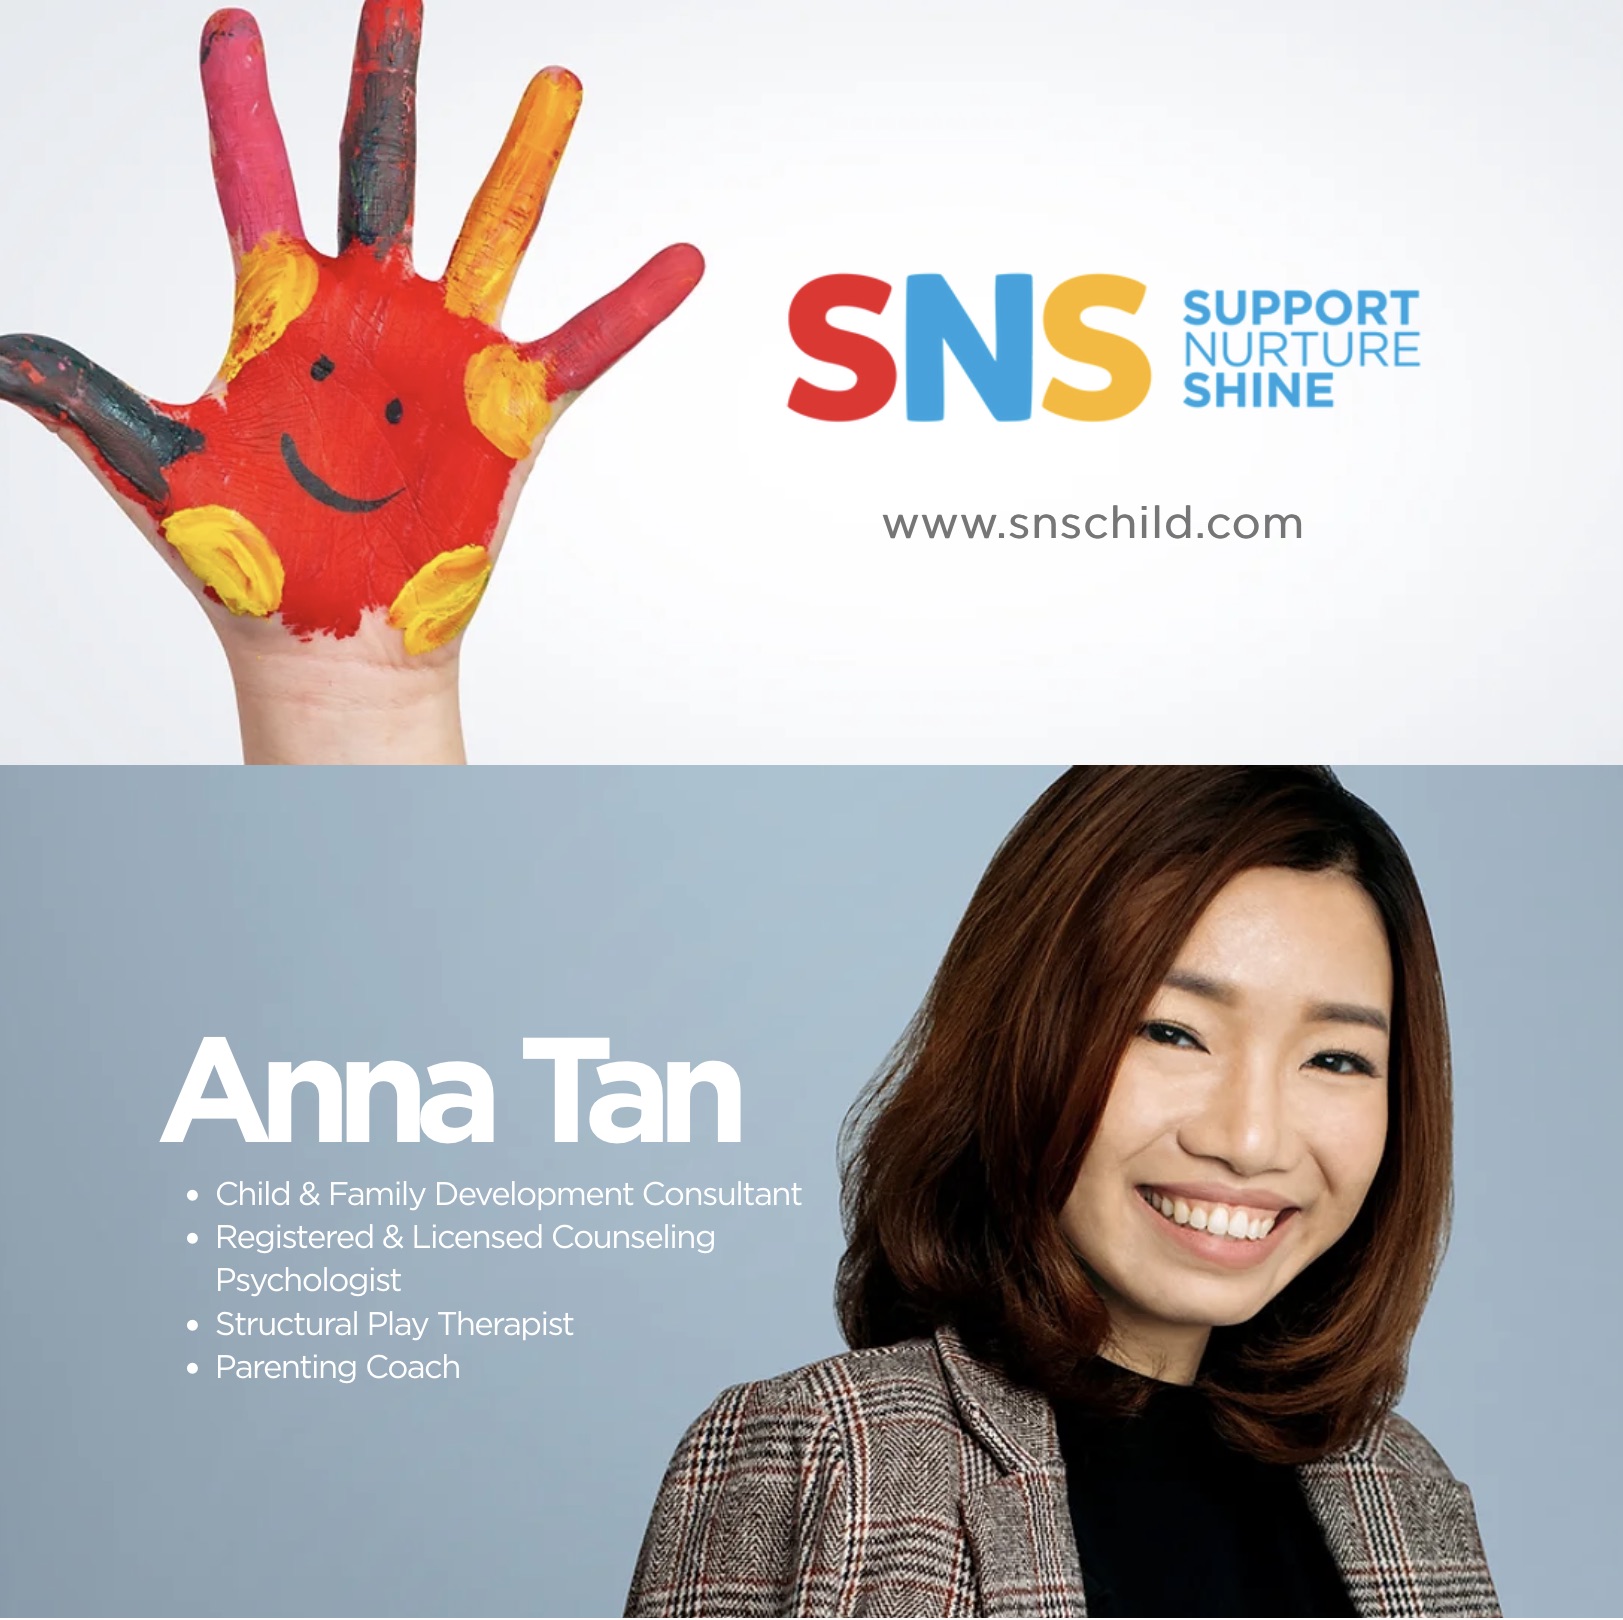 Anna Tan - Child & Family Development Consultant - www.snschild.com